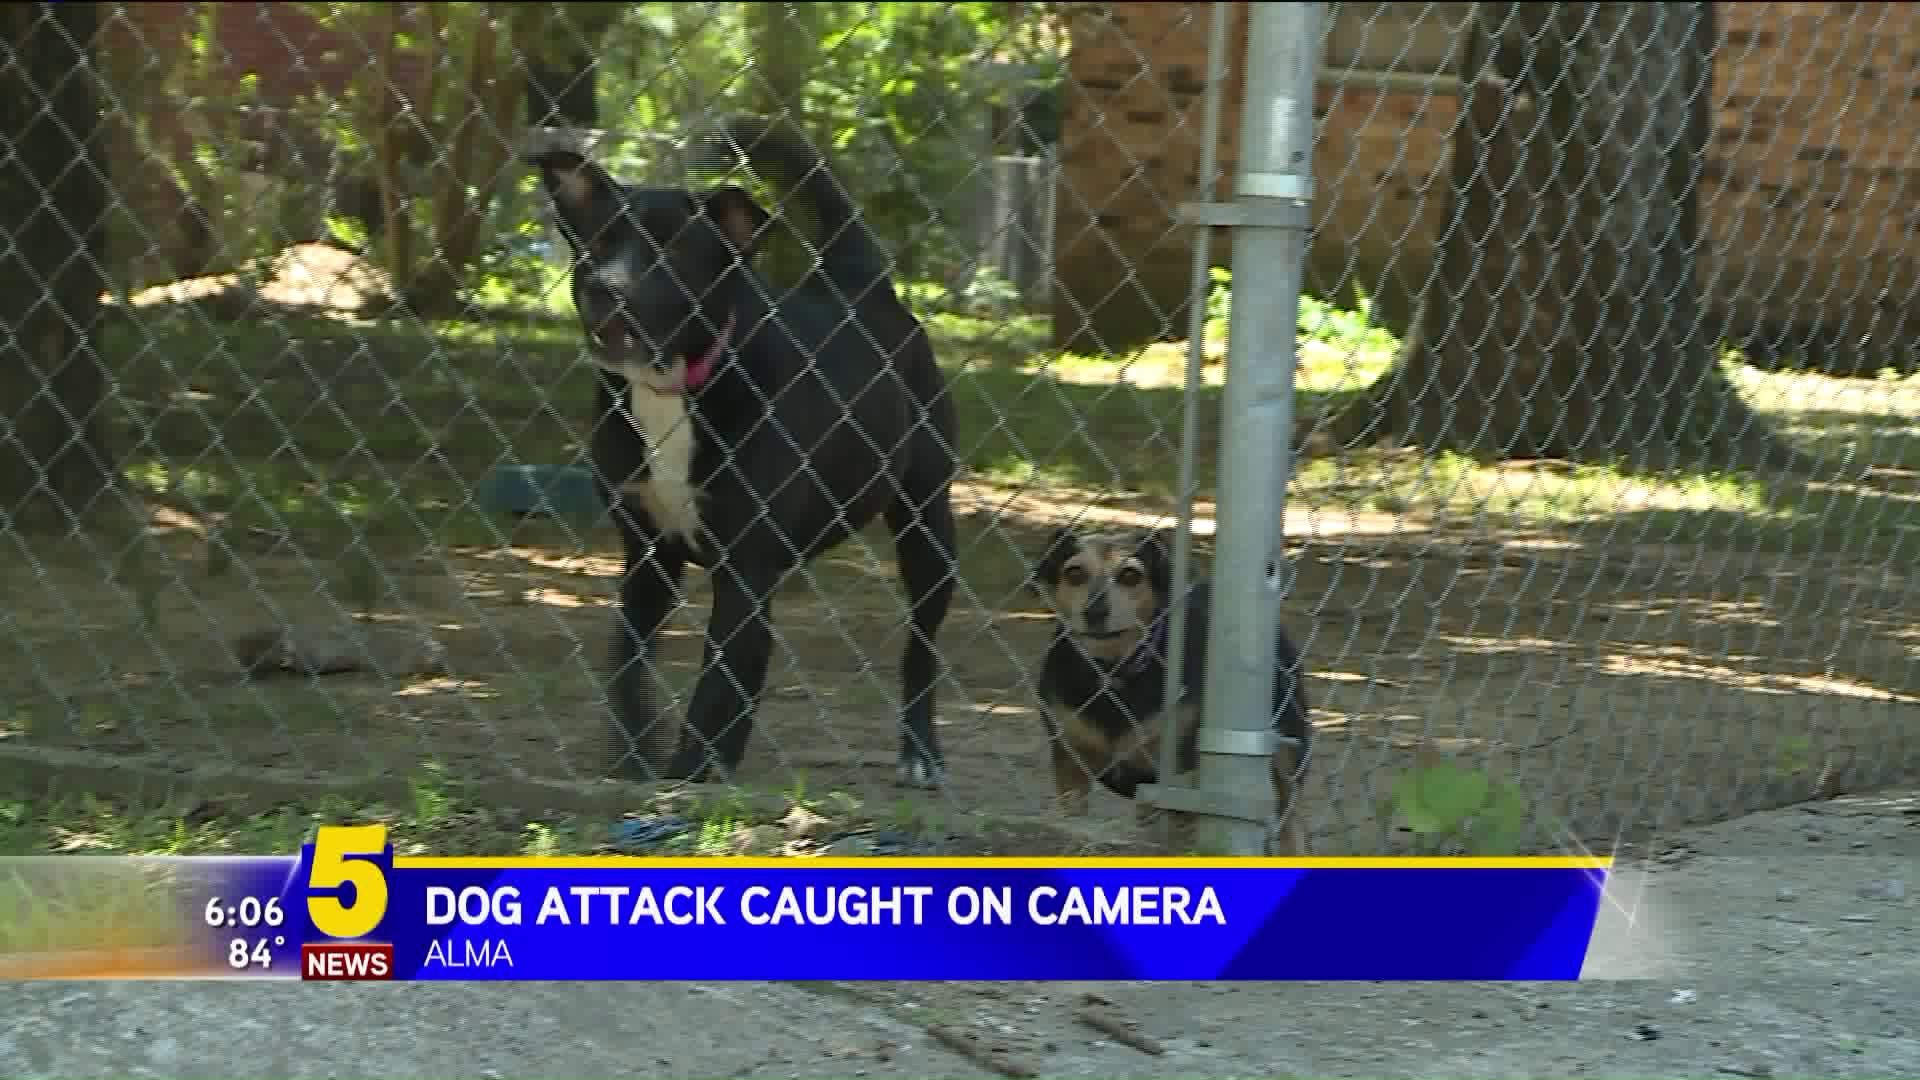 Dog Attack Caught On Camera